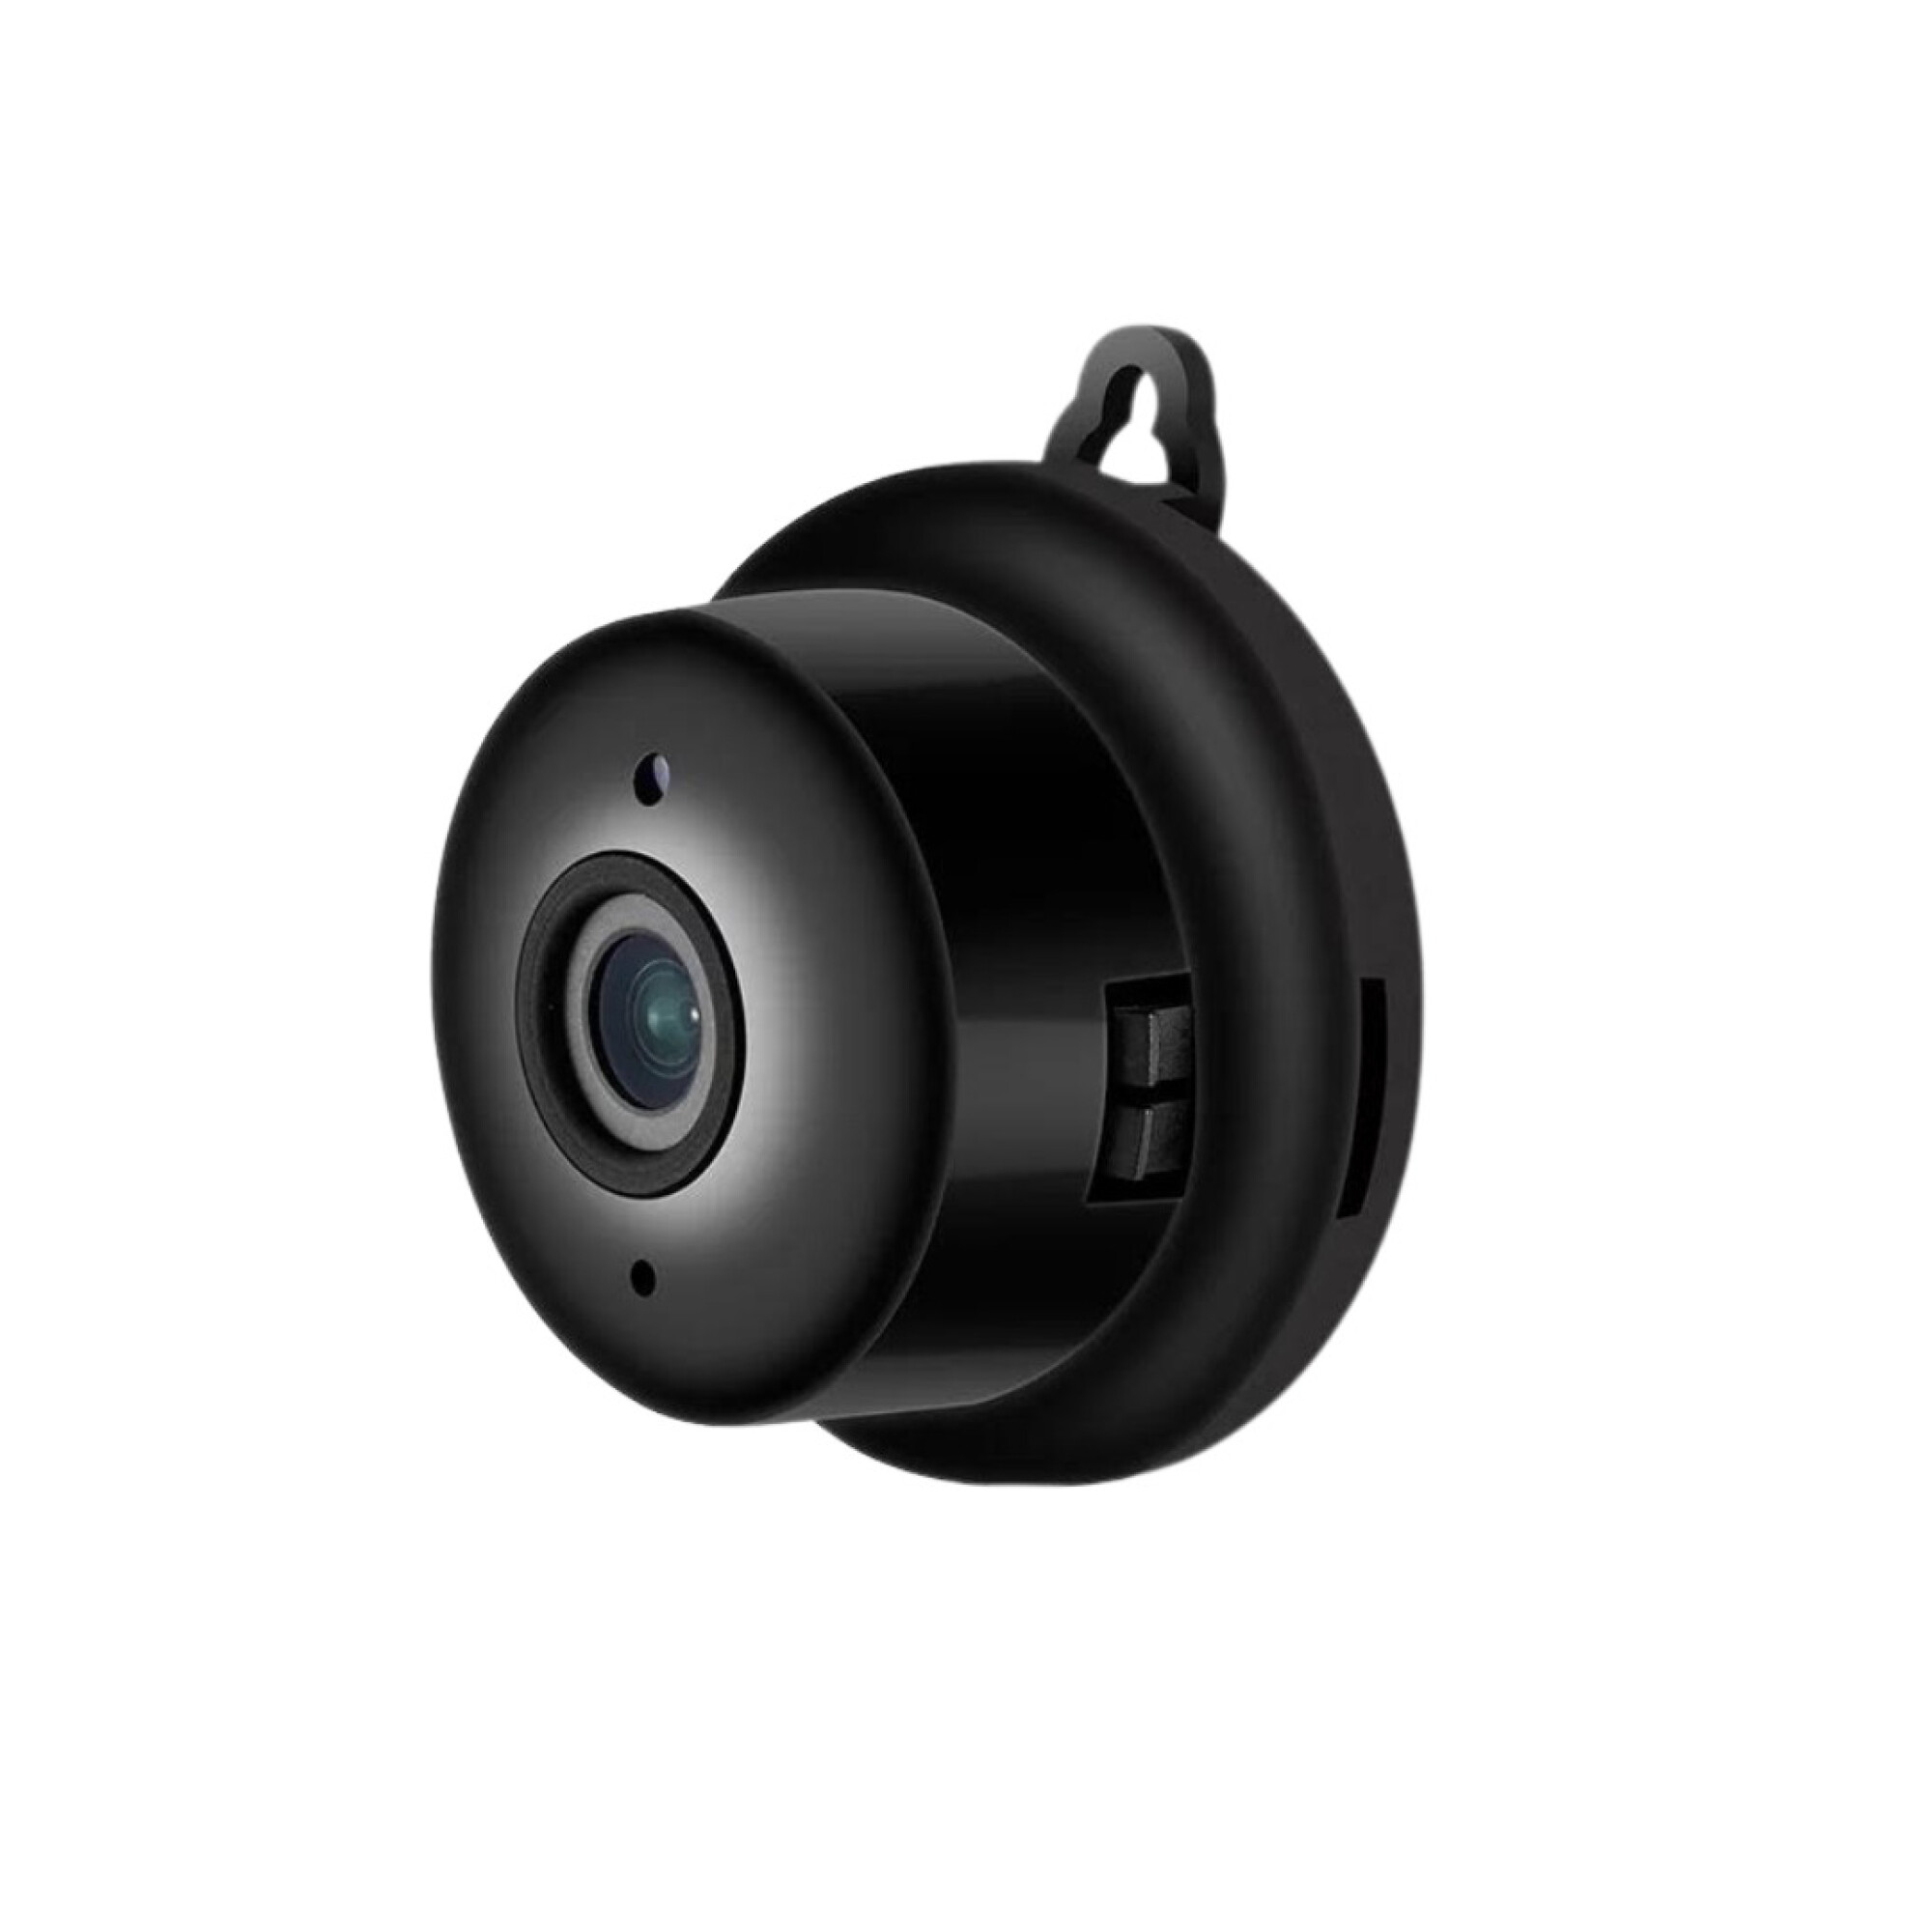 Comprar reloj espía con cámara Full HD - Precio y descuentos online